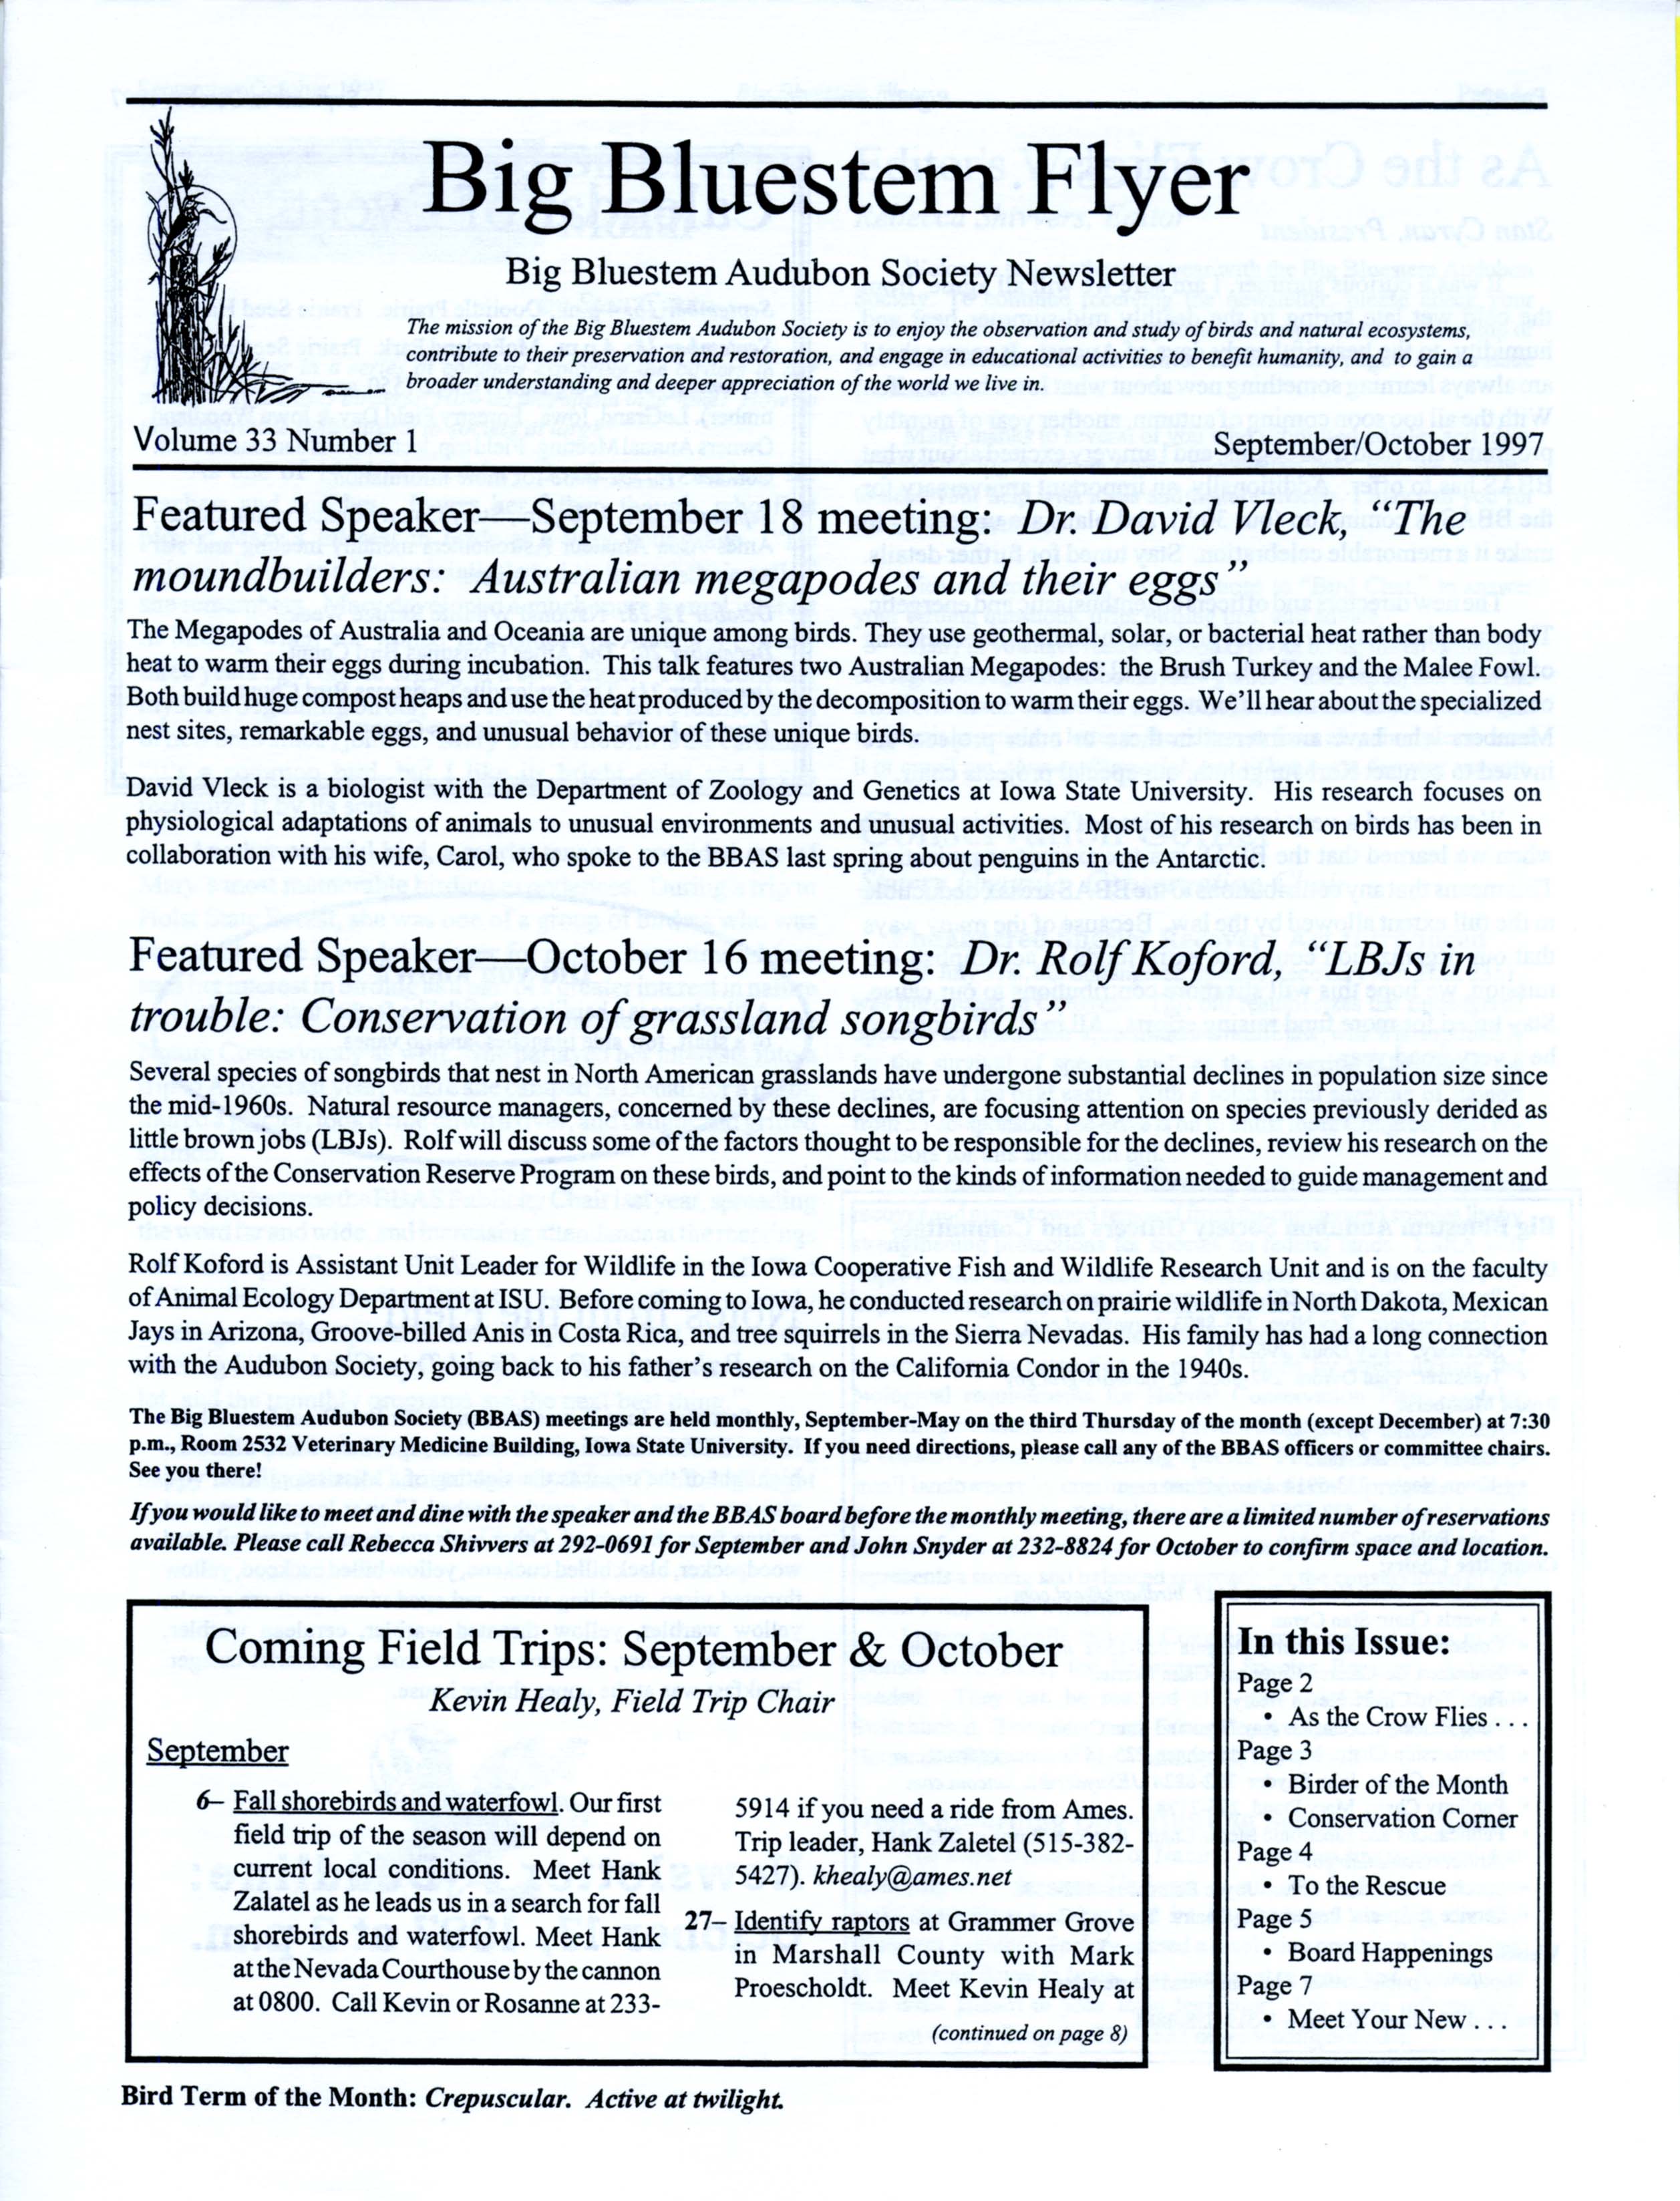 Big Bluestem Flyer, Volume 33, Number 1, September/October 1997